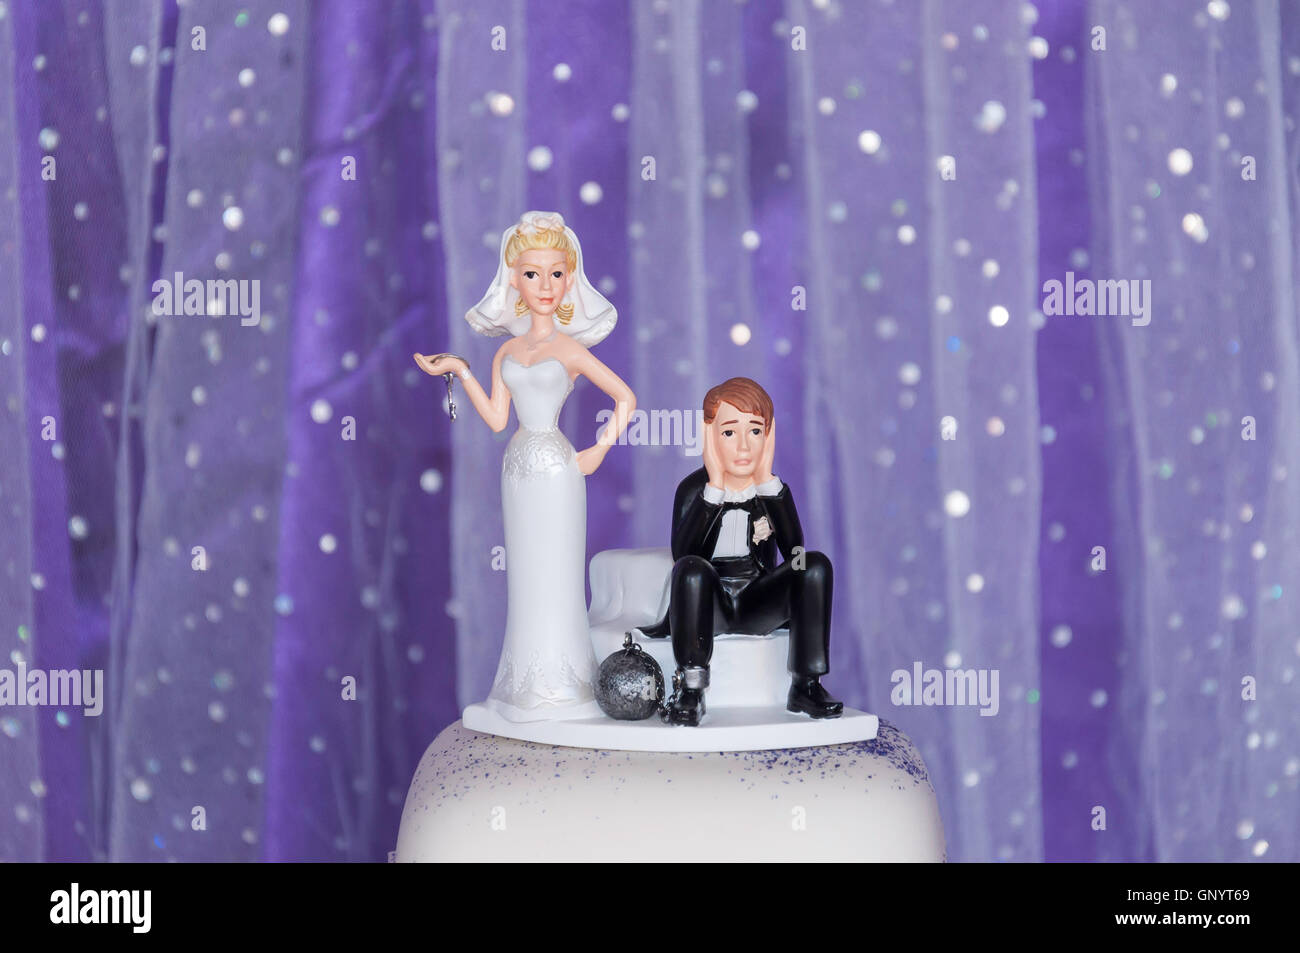 Les mariés humoristiques sur les chiffres haut de gâteau de mariage, Staines-upon-Thames, Surrey, Angleterre, Royaume-Uni Banque D'Images